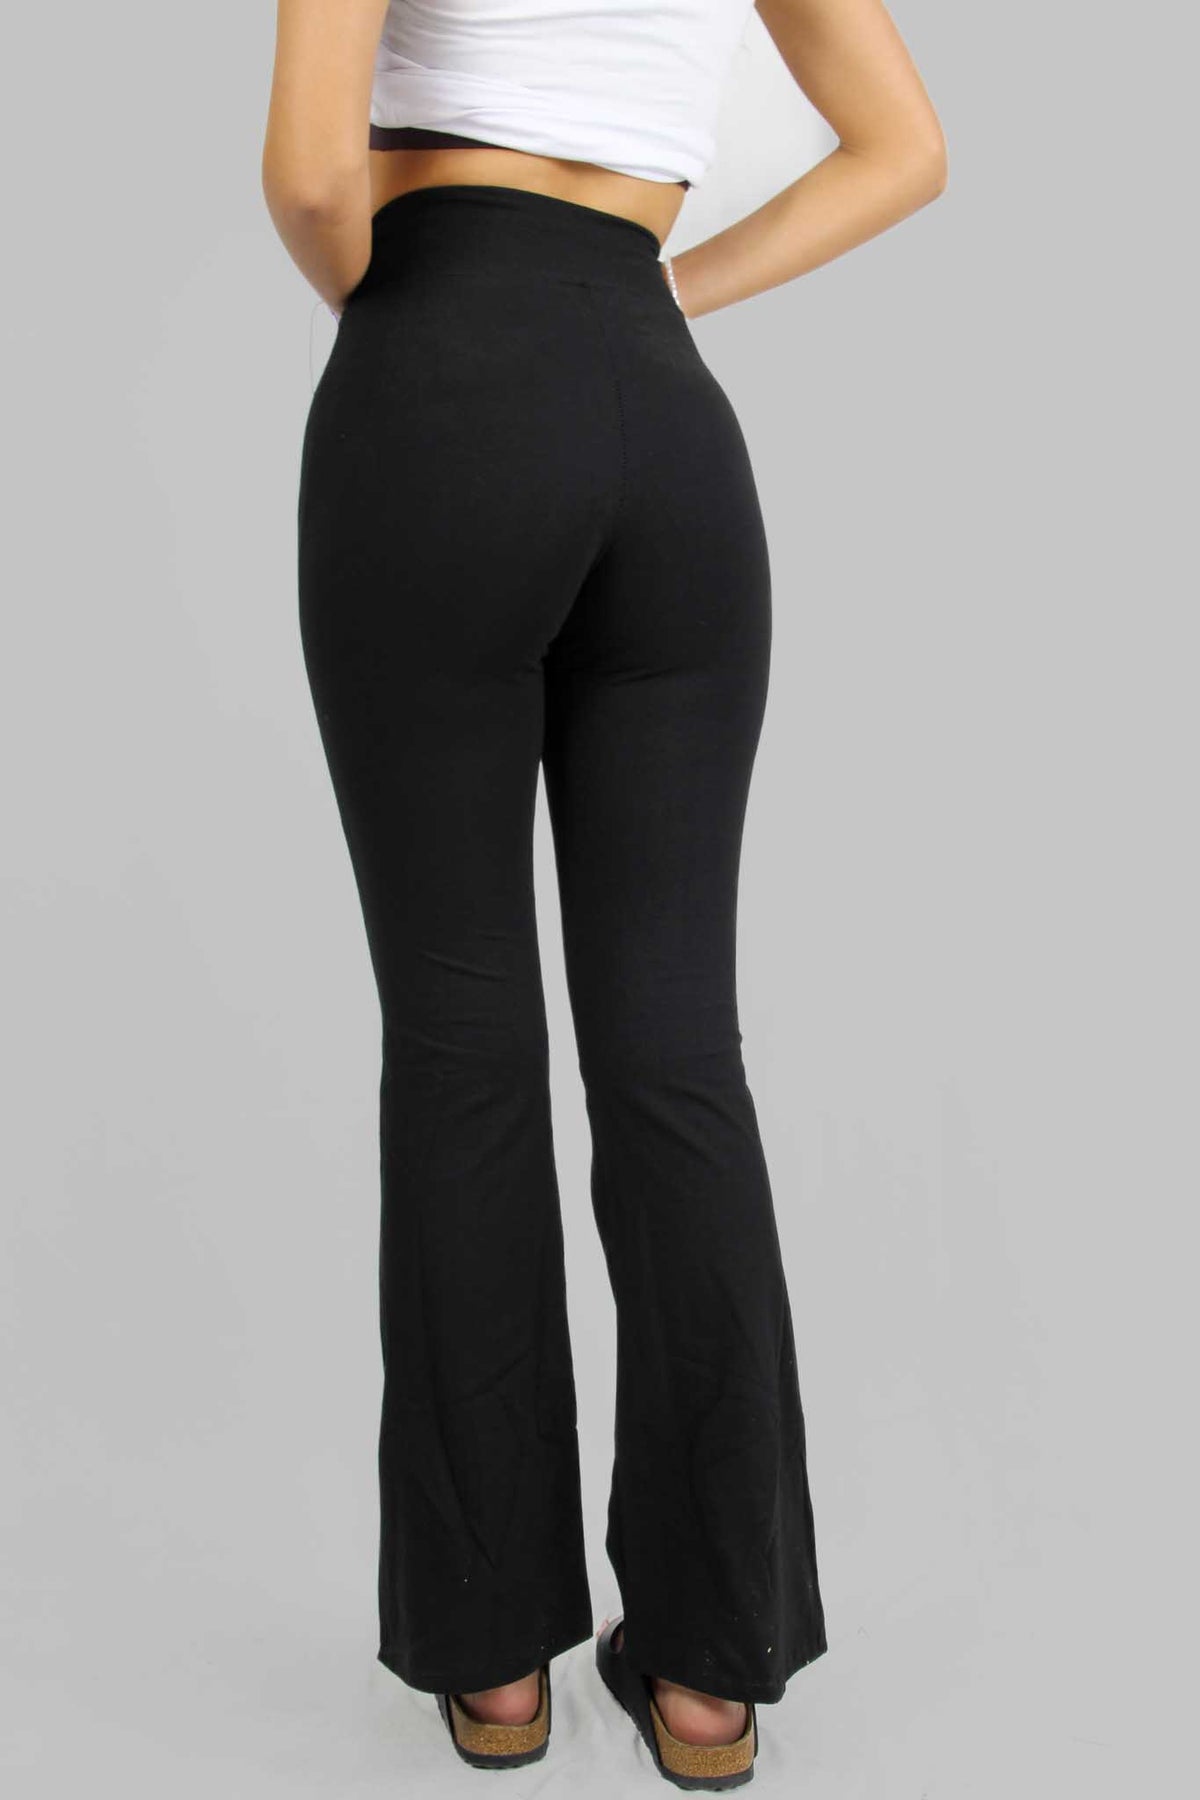 מכנס פדלפון Spring בצבע שחור לנשים-LilcoBasic-0-נאקו